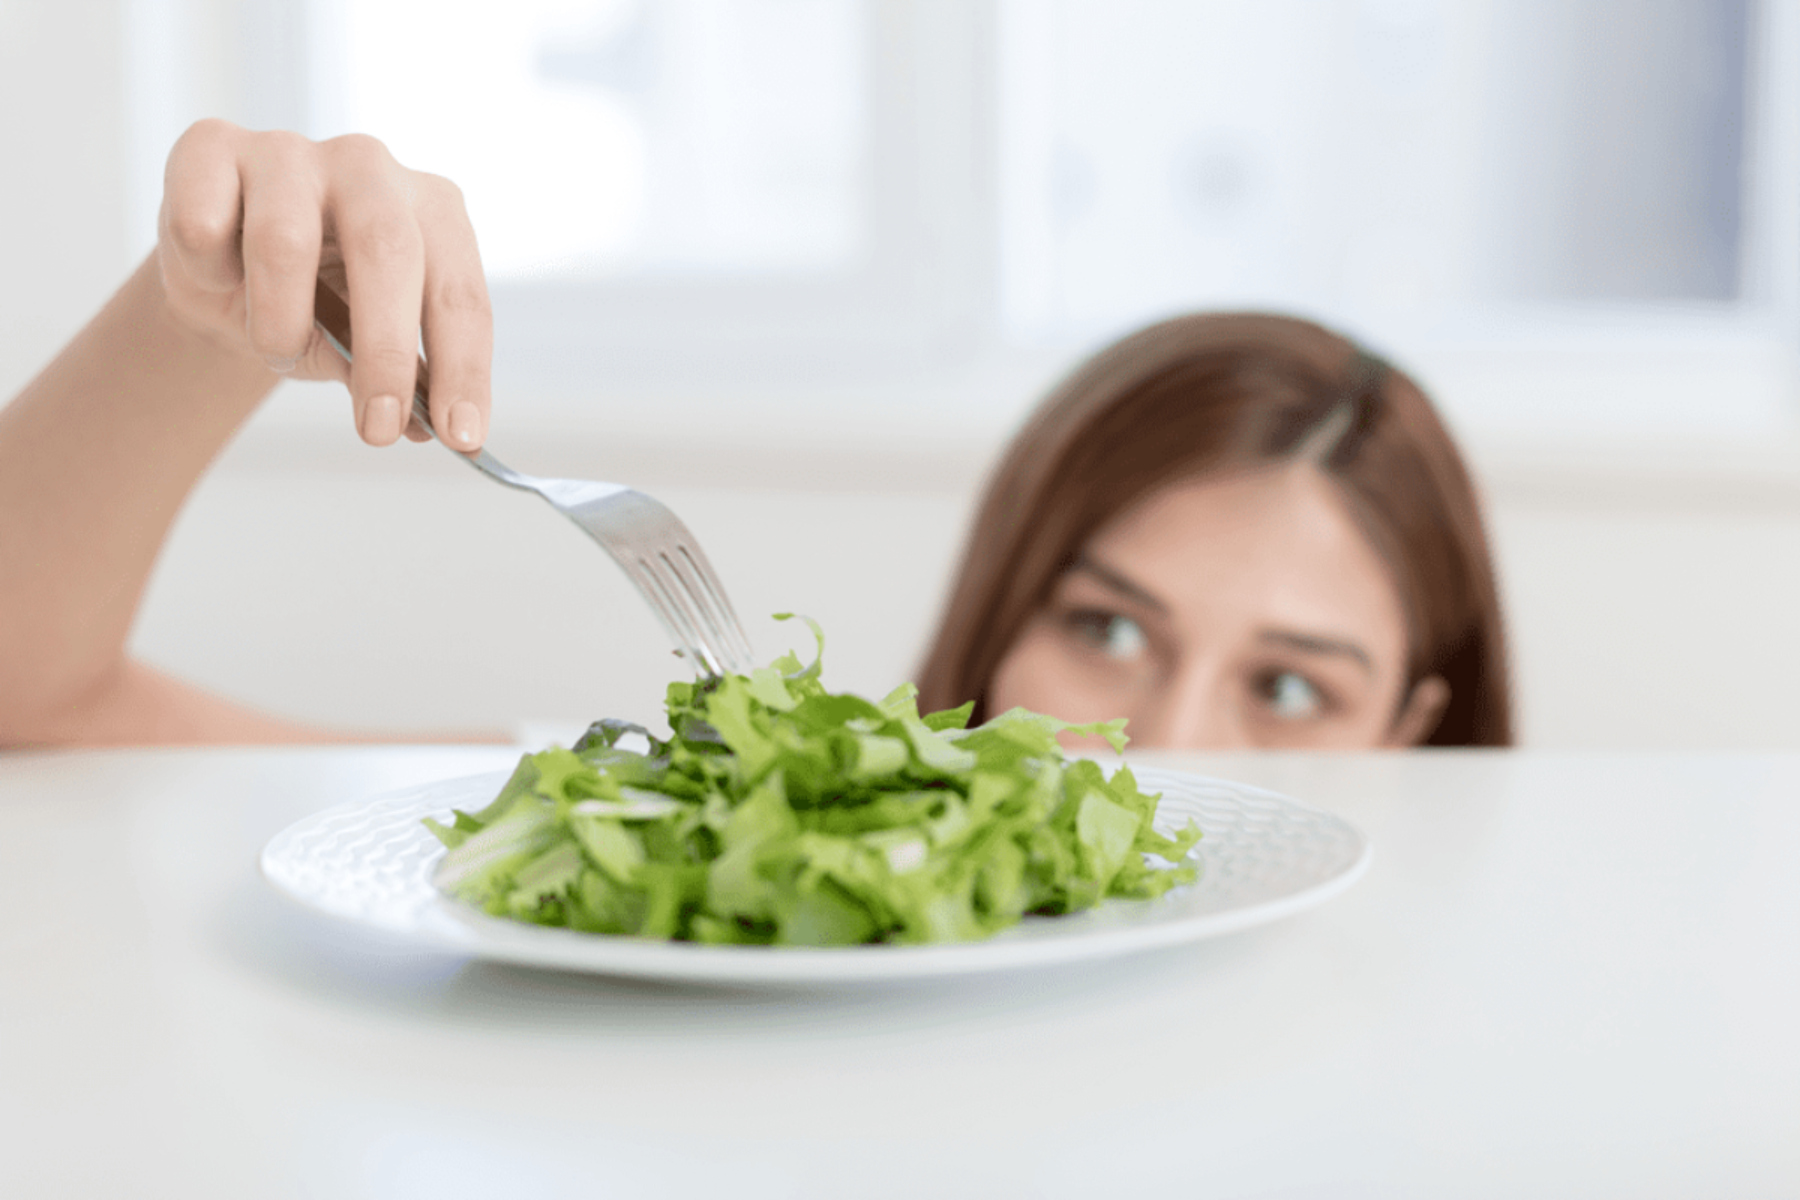 Διατροφή: Πώς θα ξαναφτιάξω τη διατροφή μου μετά τις διακοπές;